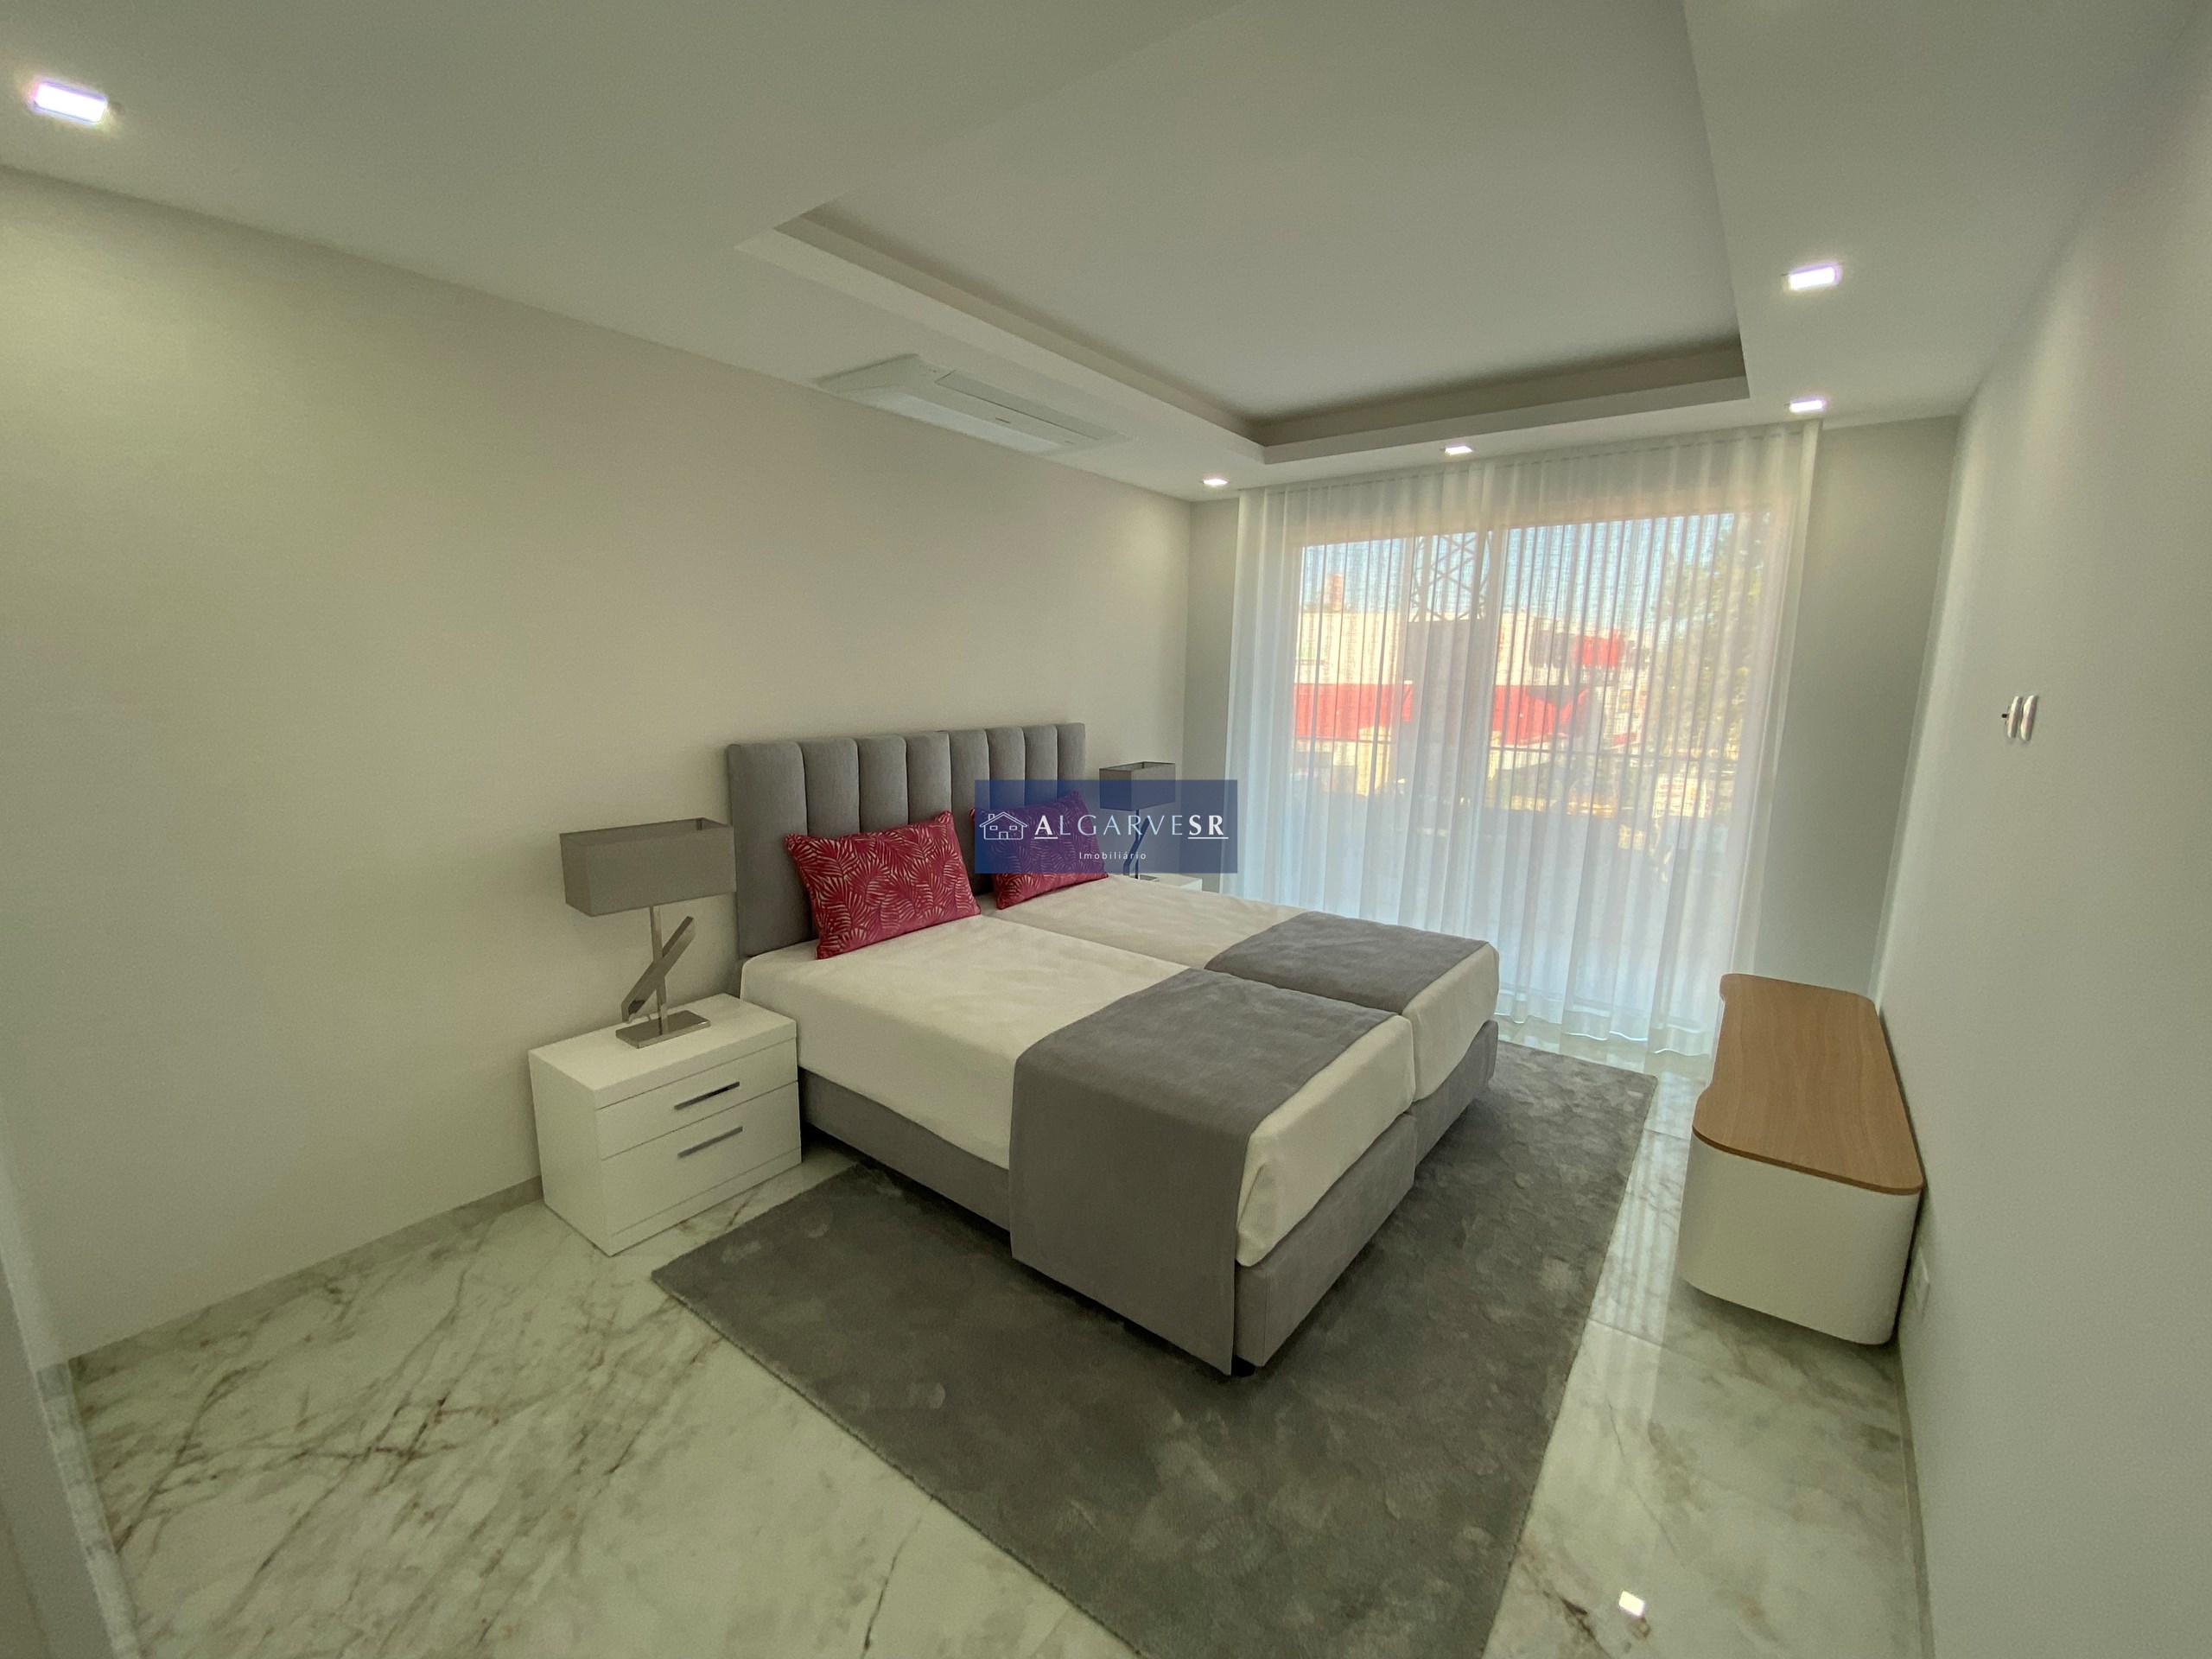 Lagos - ApartmentsT3 Nouveau dans la copropriété de luxe w / piscine